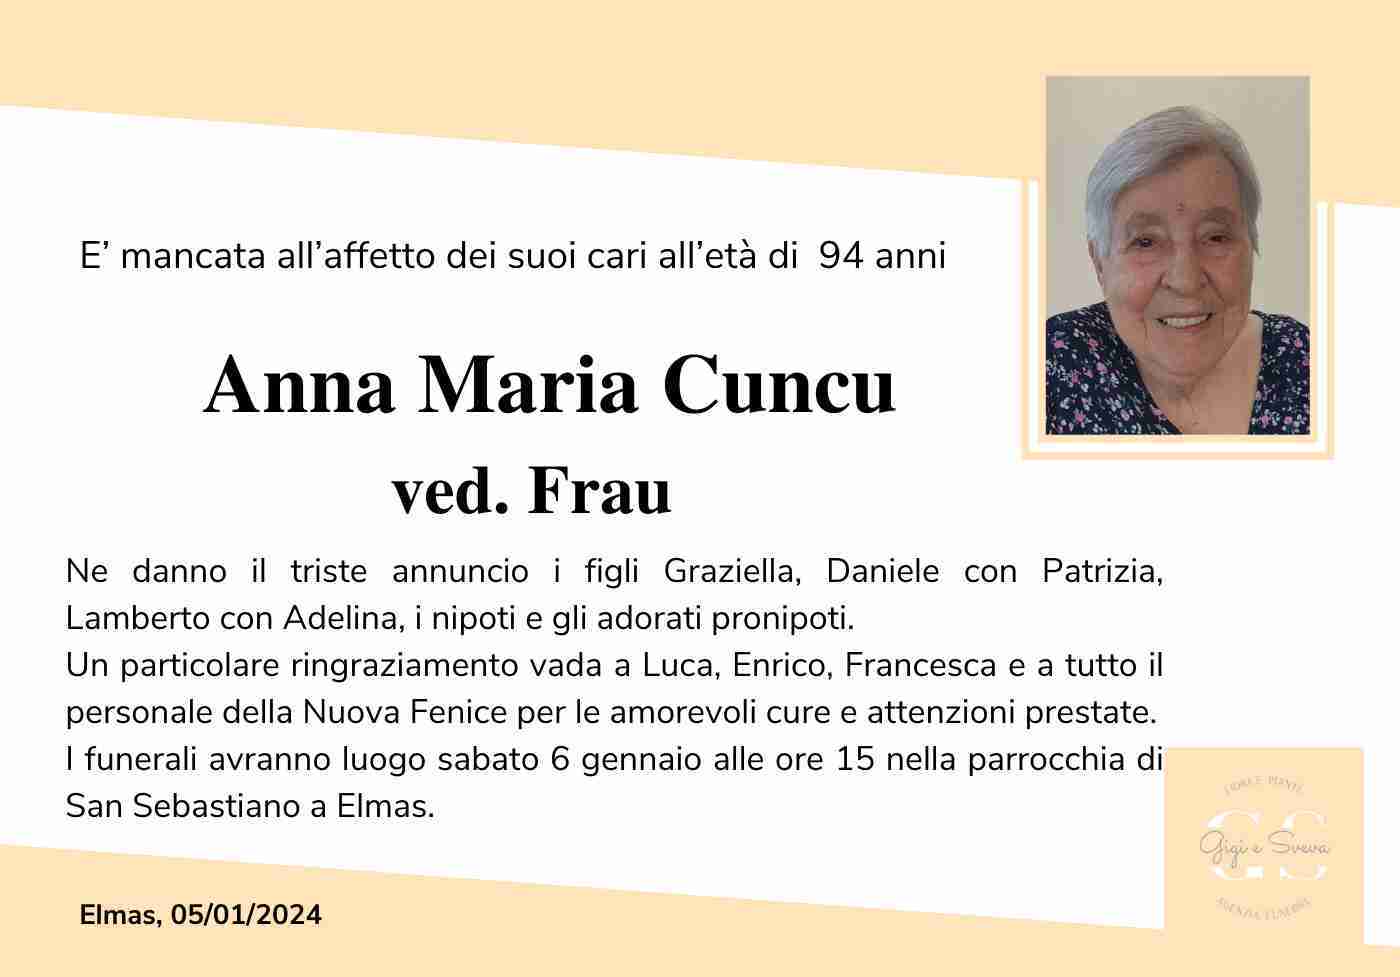 Anna Maria Cuncu